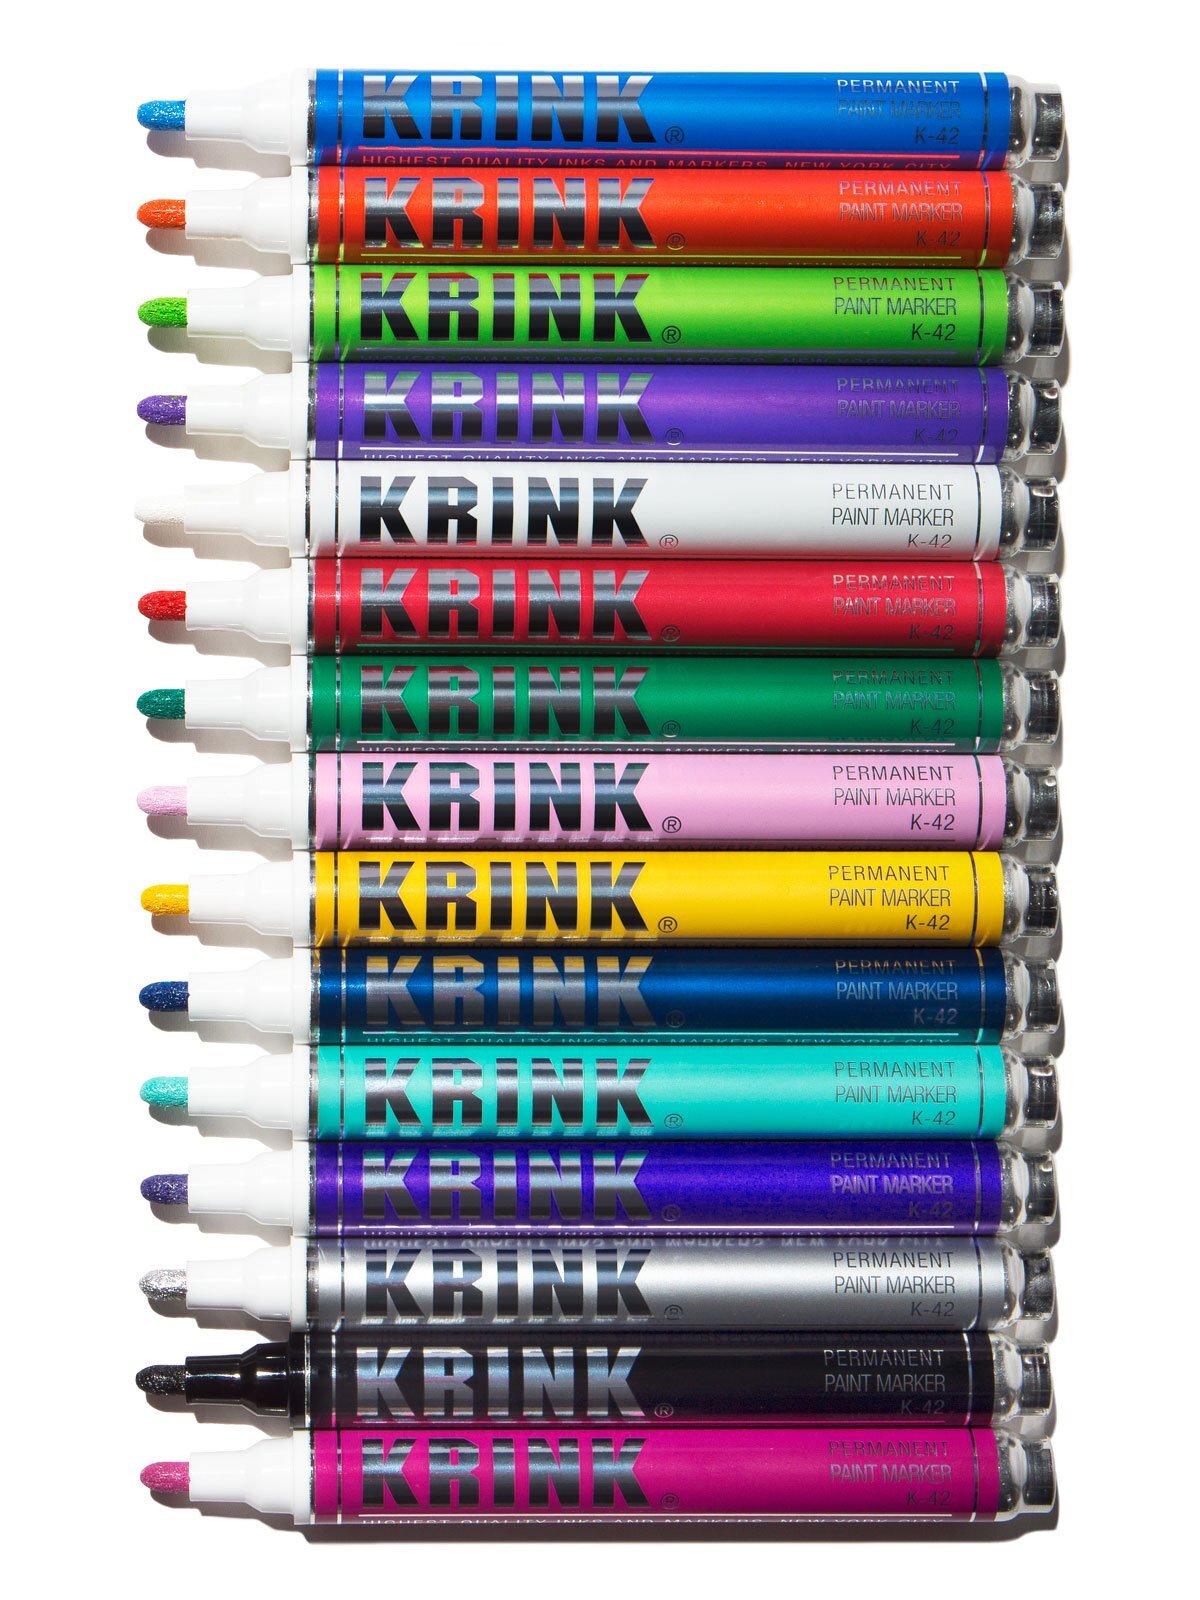 Маркер и маркер разница. Маркер Krink k -42. Маркеры Krink k-42 розовый. Маркеры Krink k-42 белый. Маркеры Krink k-42 салатовый.